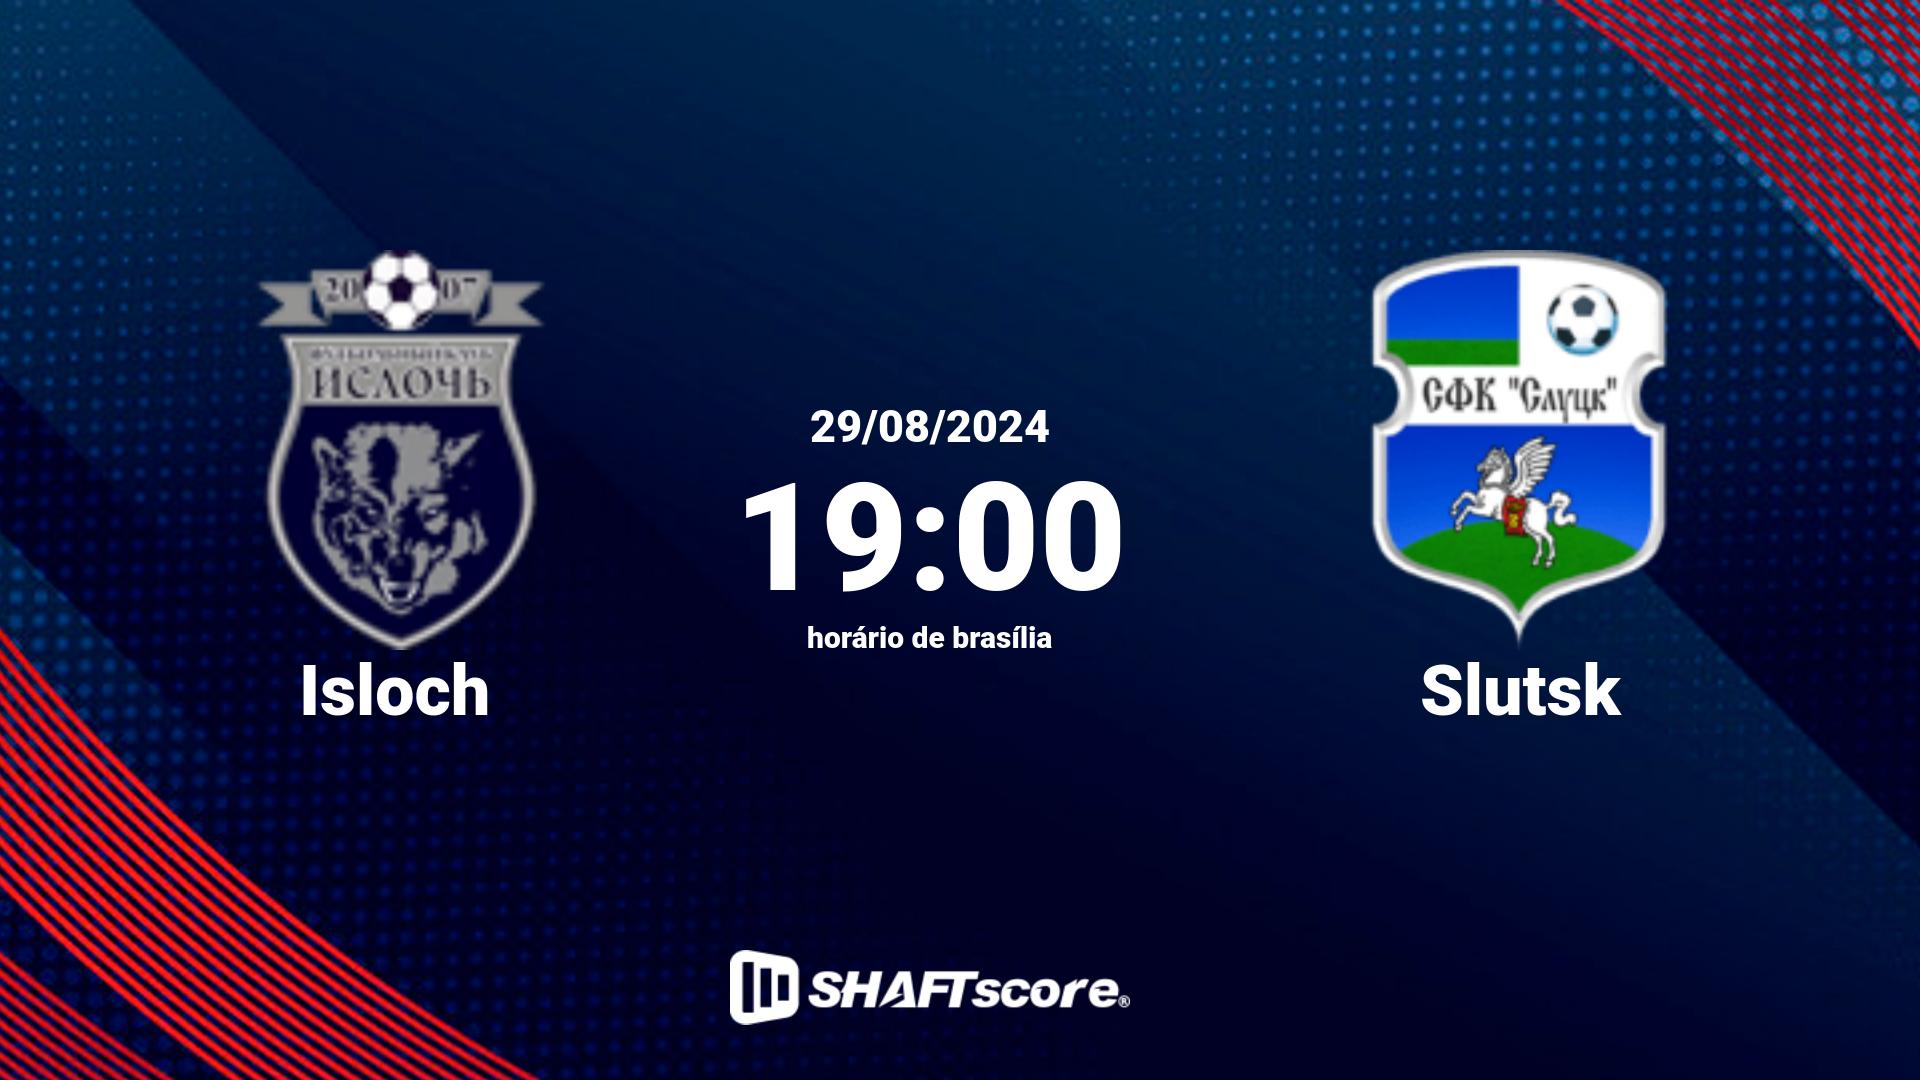 Estatísticas do jogo Isloch vs Slutsk 29.08 19:00